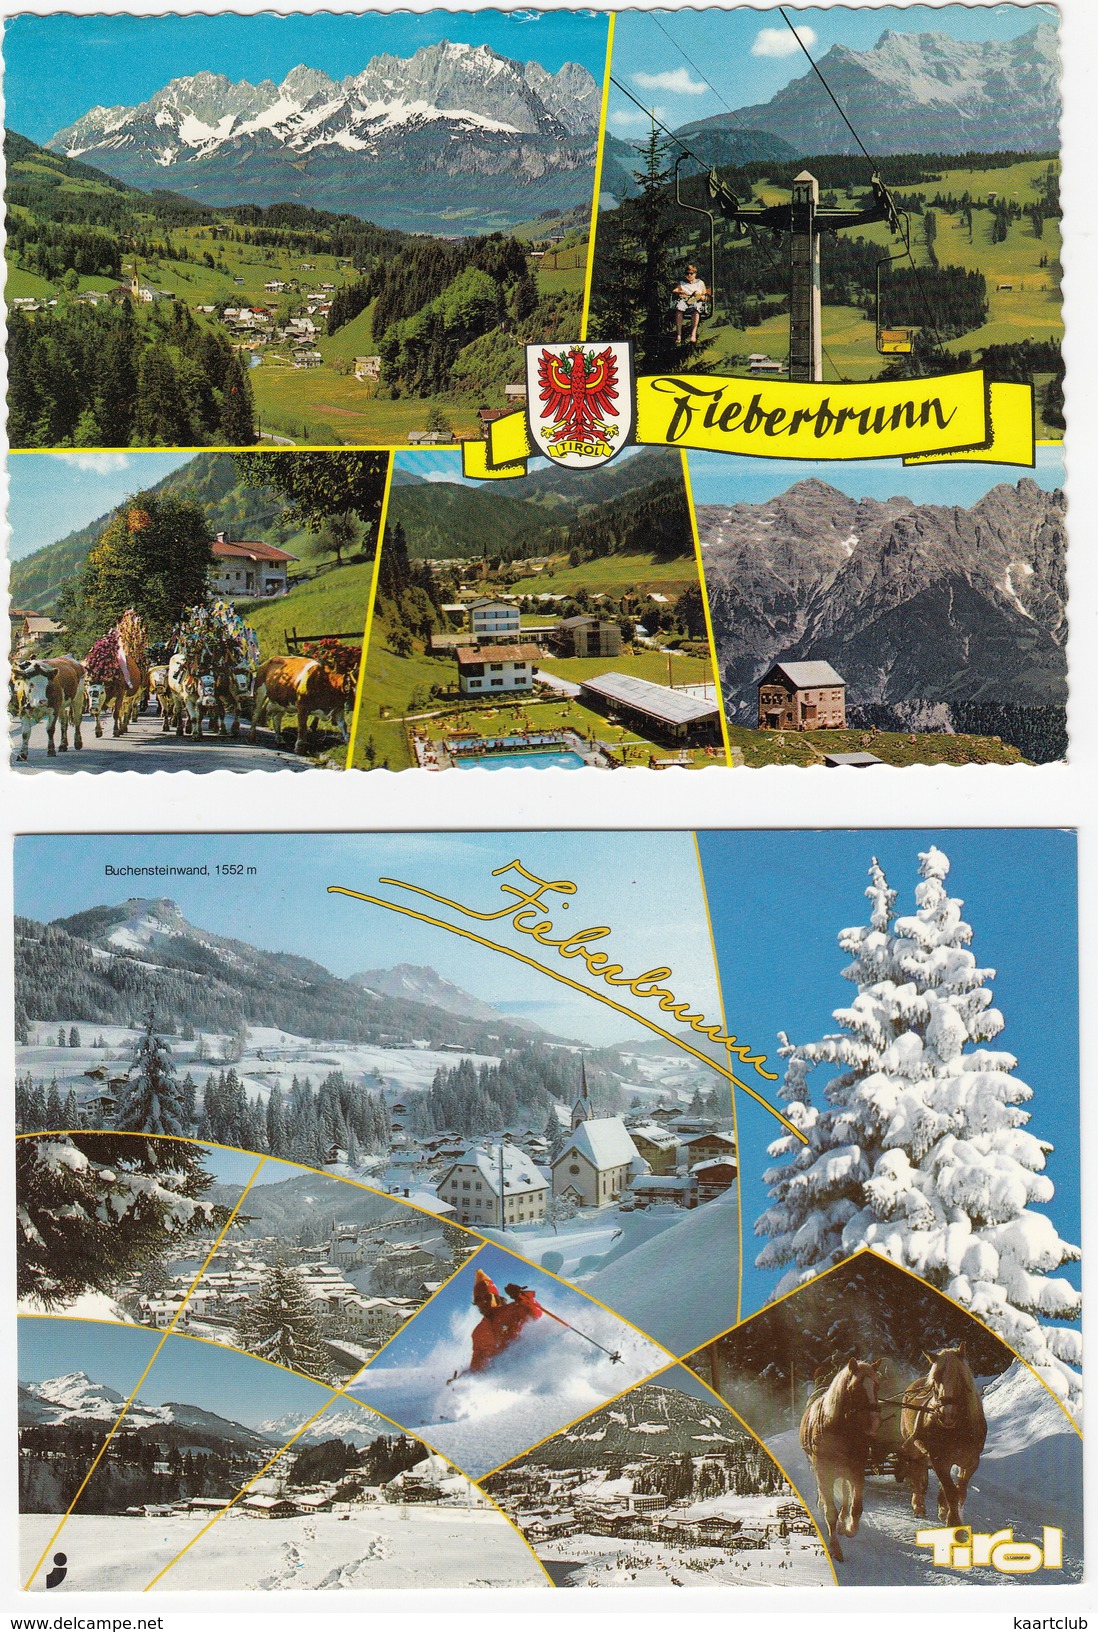 2 Ansichten: Fieberbrunn -  'Sommer & 'Winter'  -  Multiviews  - (Tirol, Österreich) - Fieberbrunn